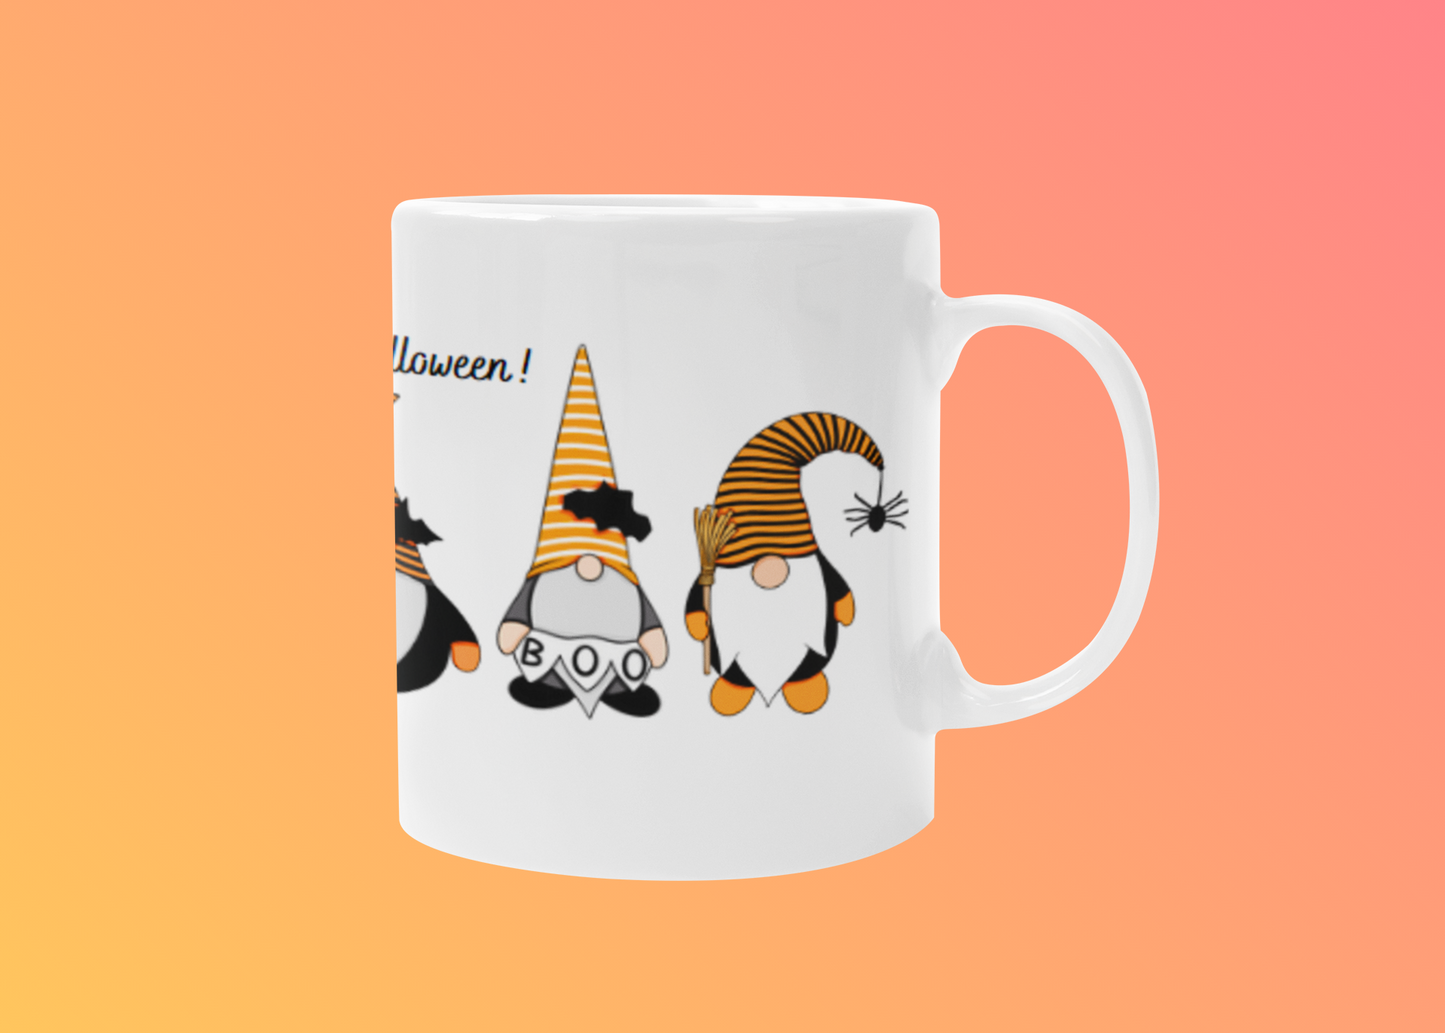 Halloween Gnome Mug